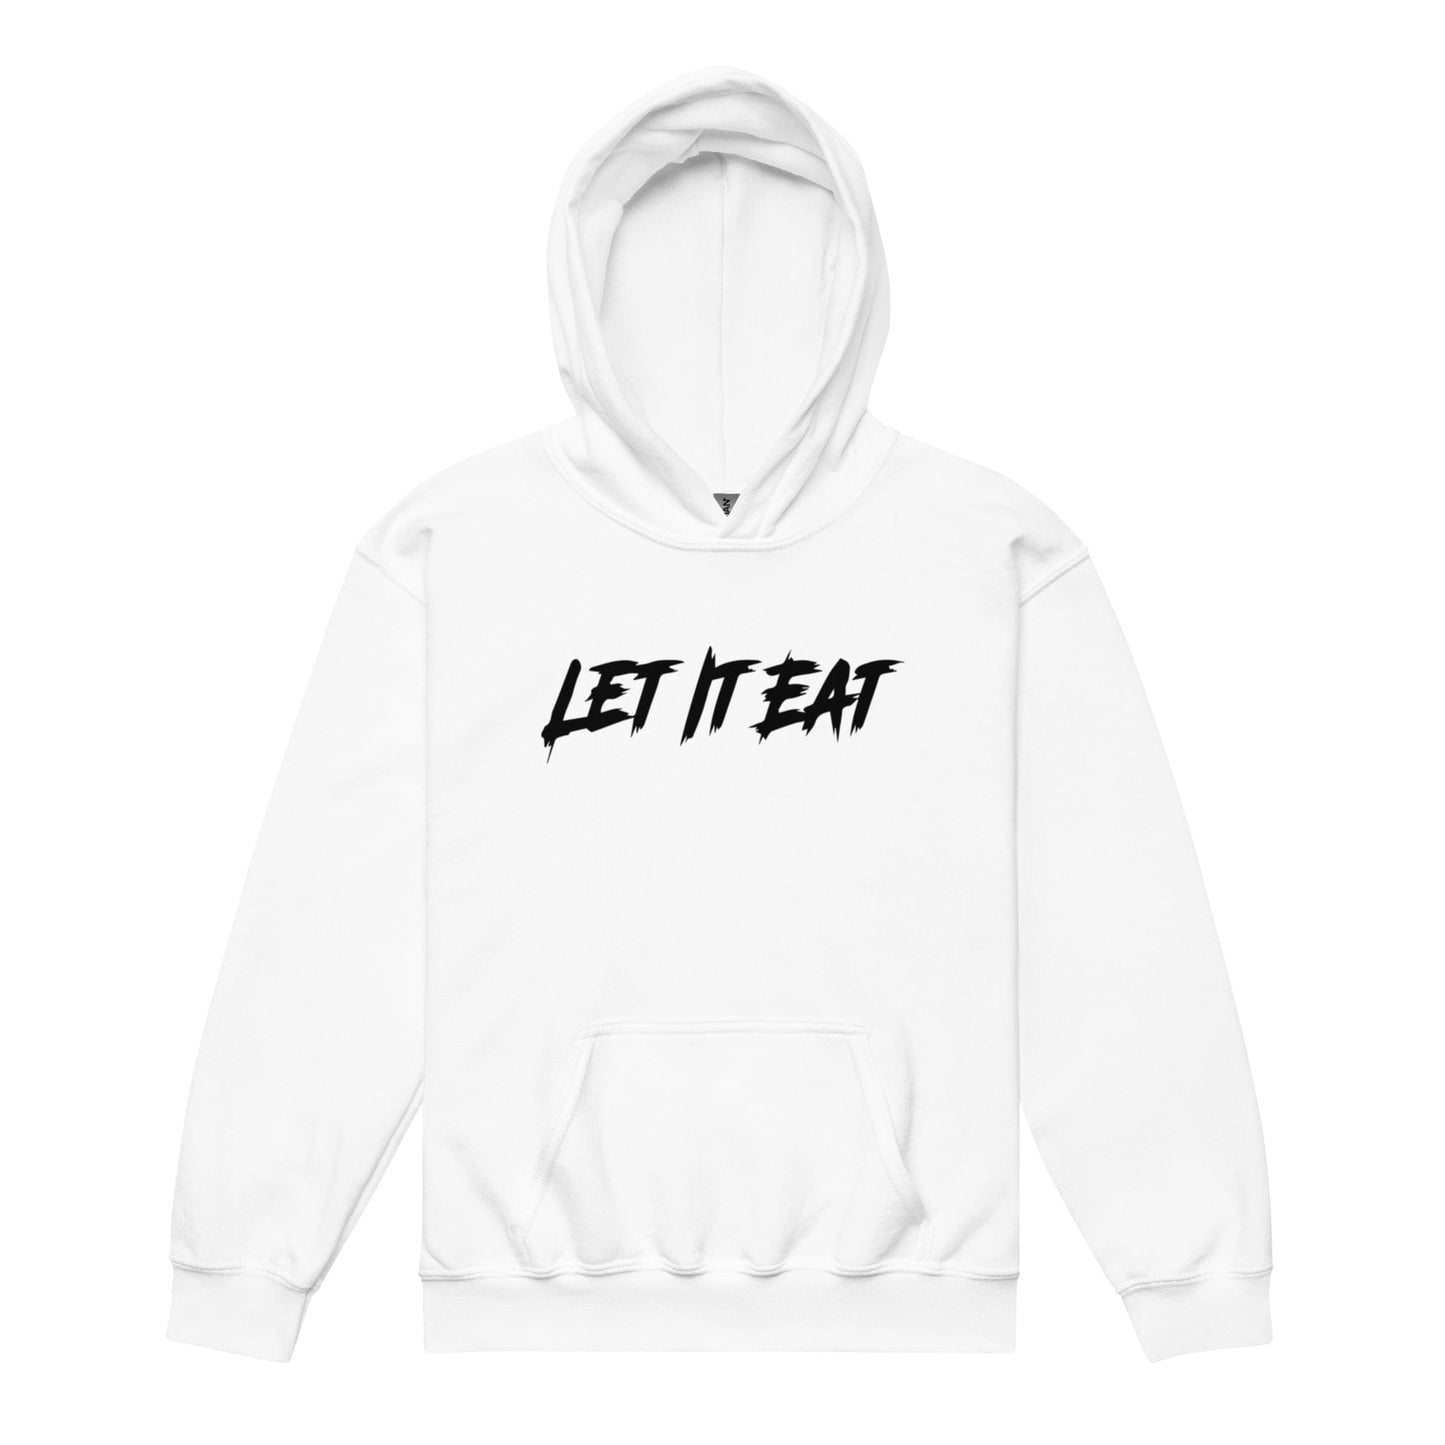 Let it Eat - Youth Hoodie